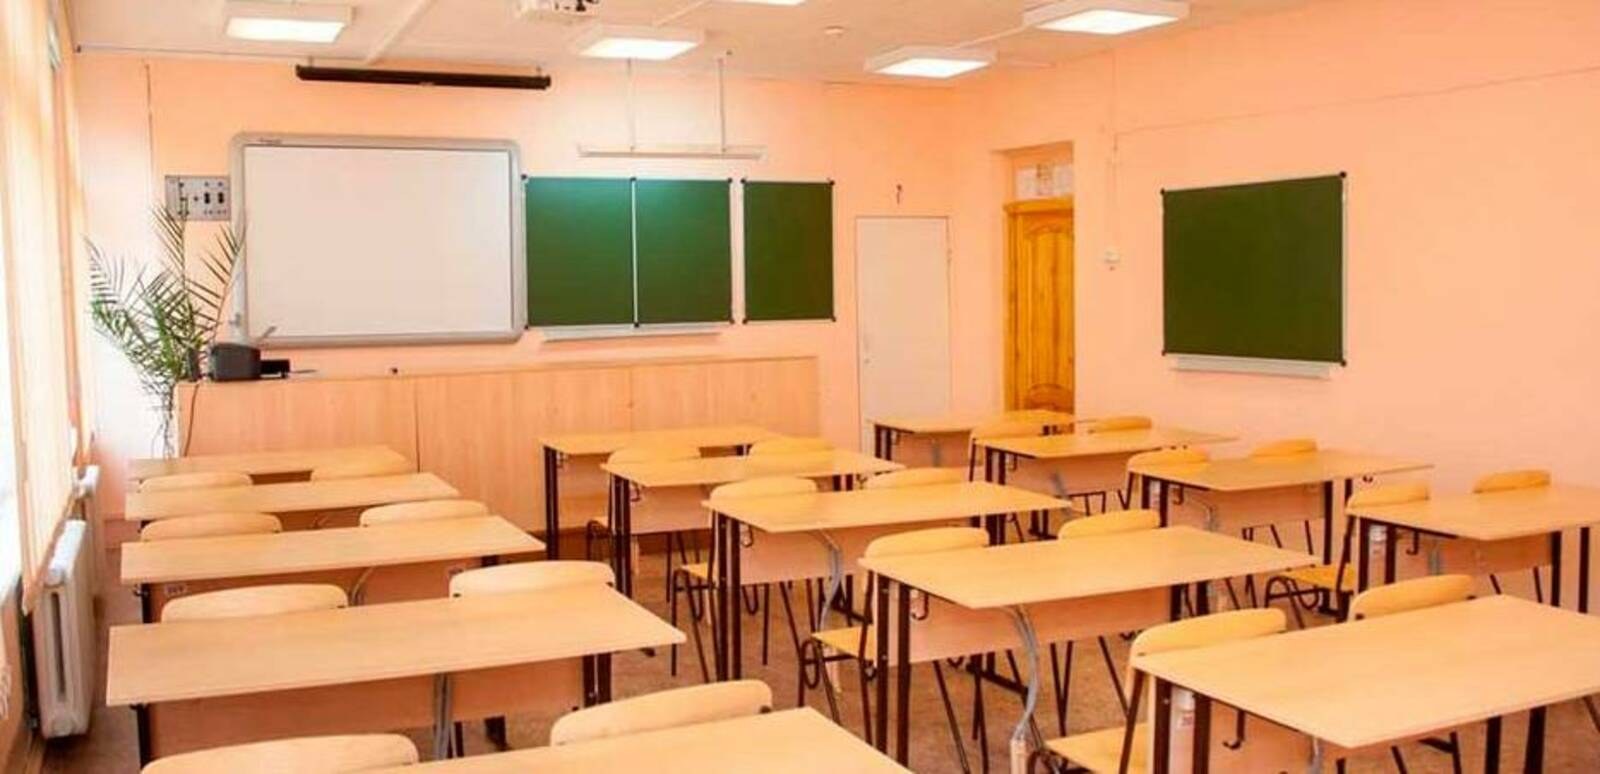 Можно ли создать класс в классе. Освещение в школе. Цвет стен в классе. Классная комната в школе. Классный кабинет в школе.